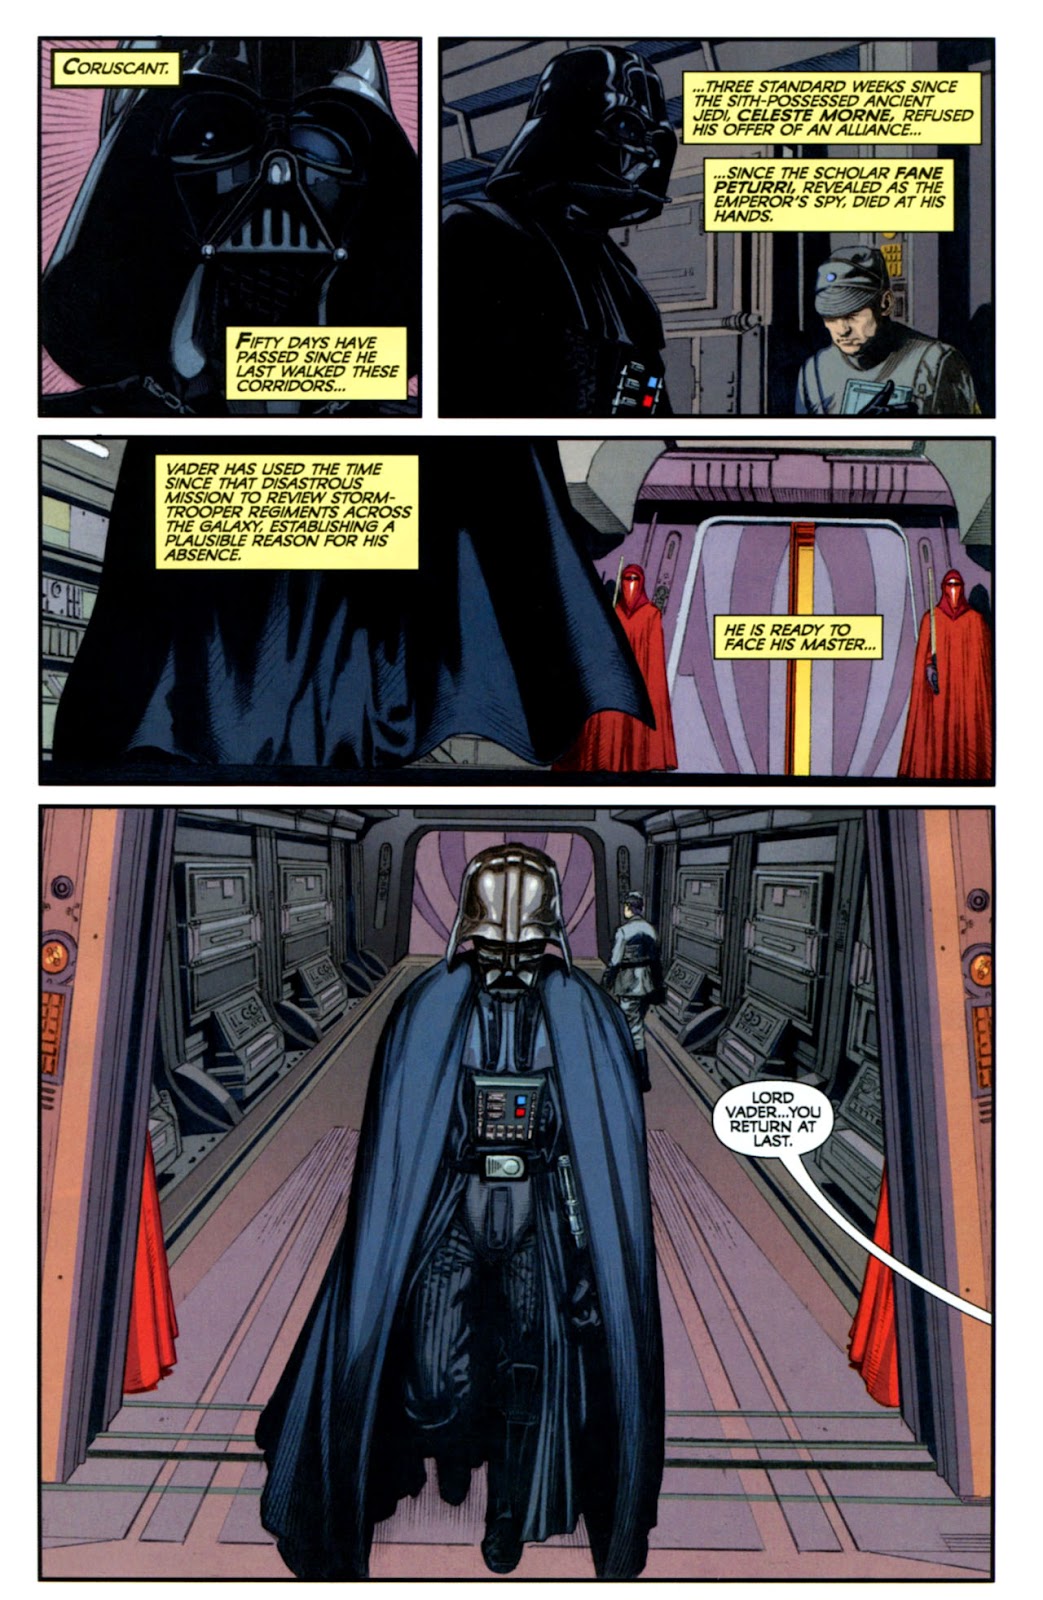 Star Wars: Dark Times issue 13 - Blue Harvest, Part 1 - Page 3